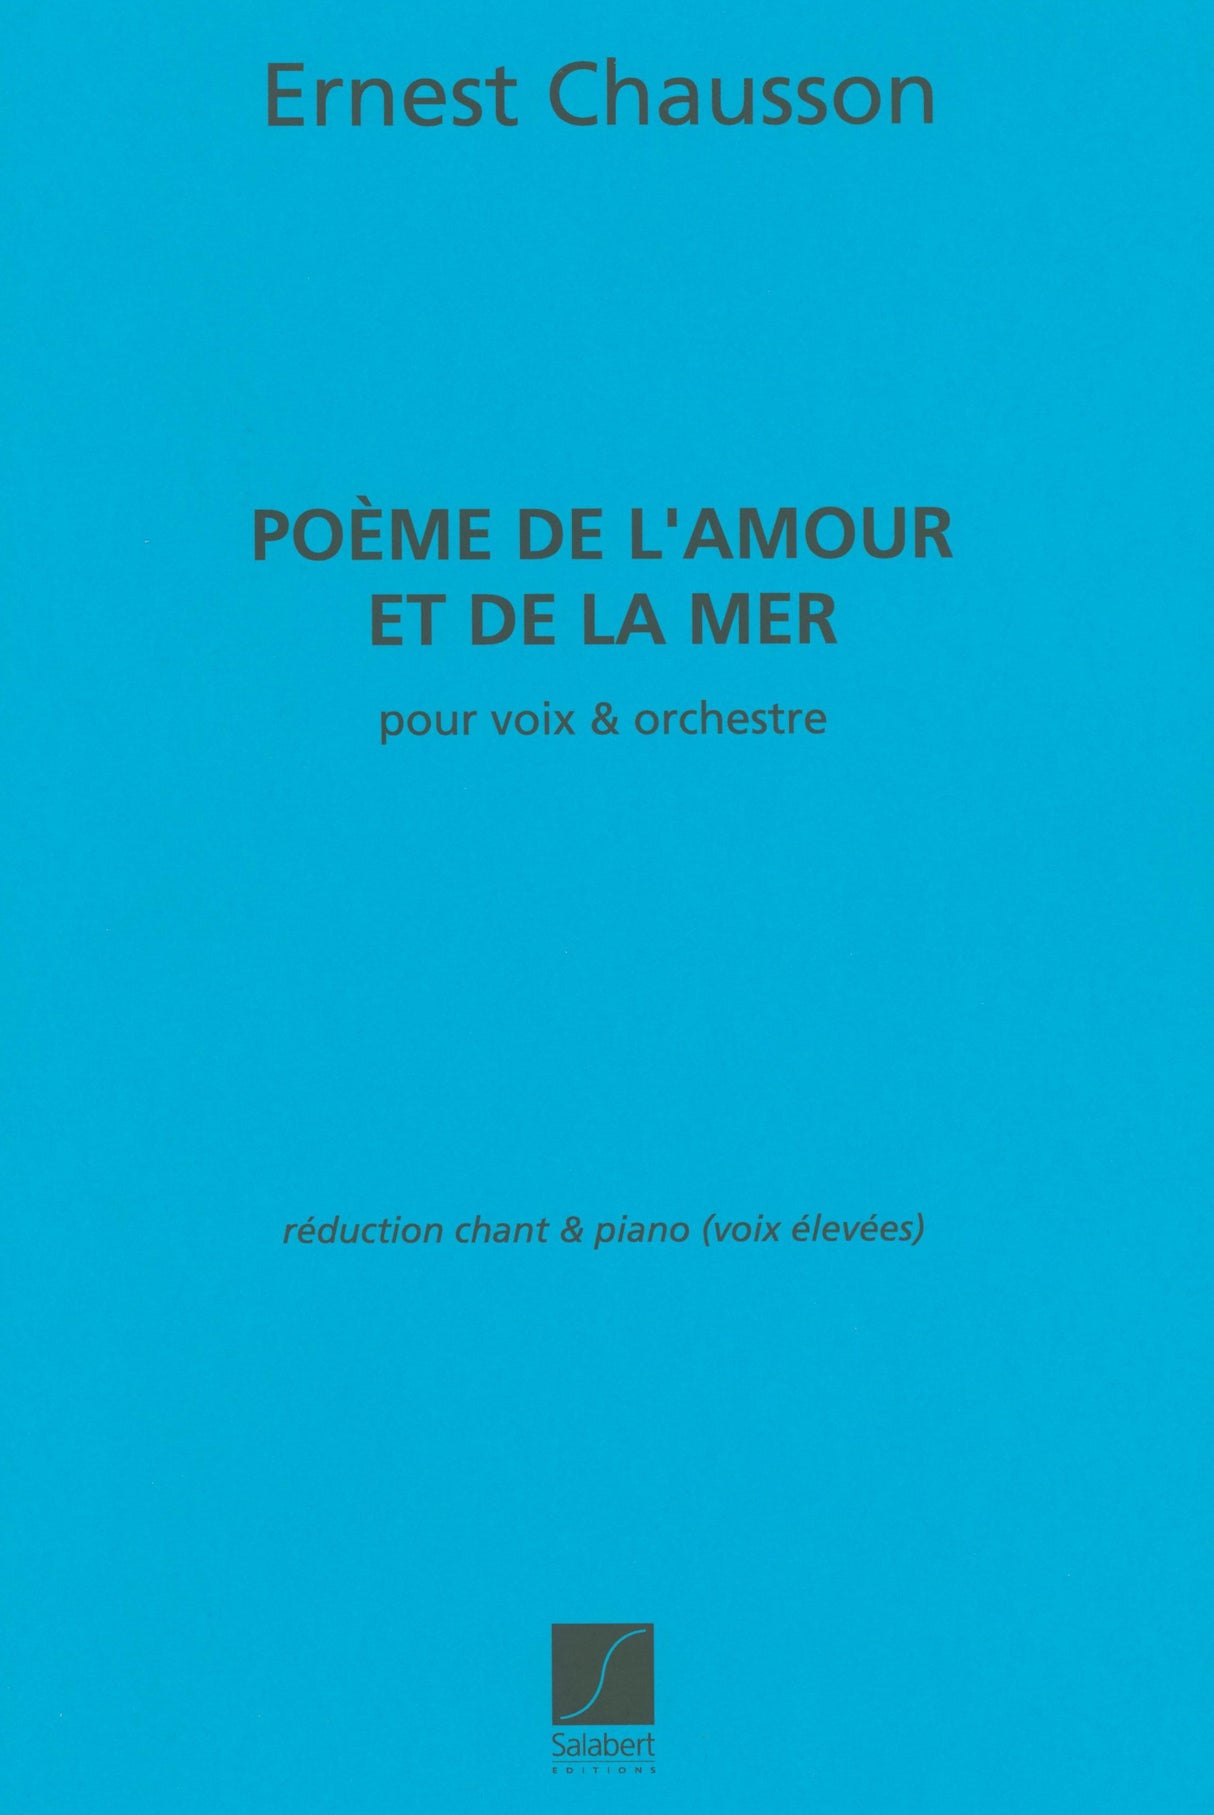 Chausson: Poème de l'amour et de la mer, Op. 19